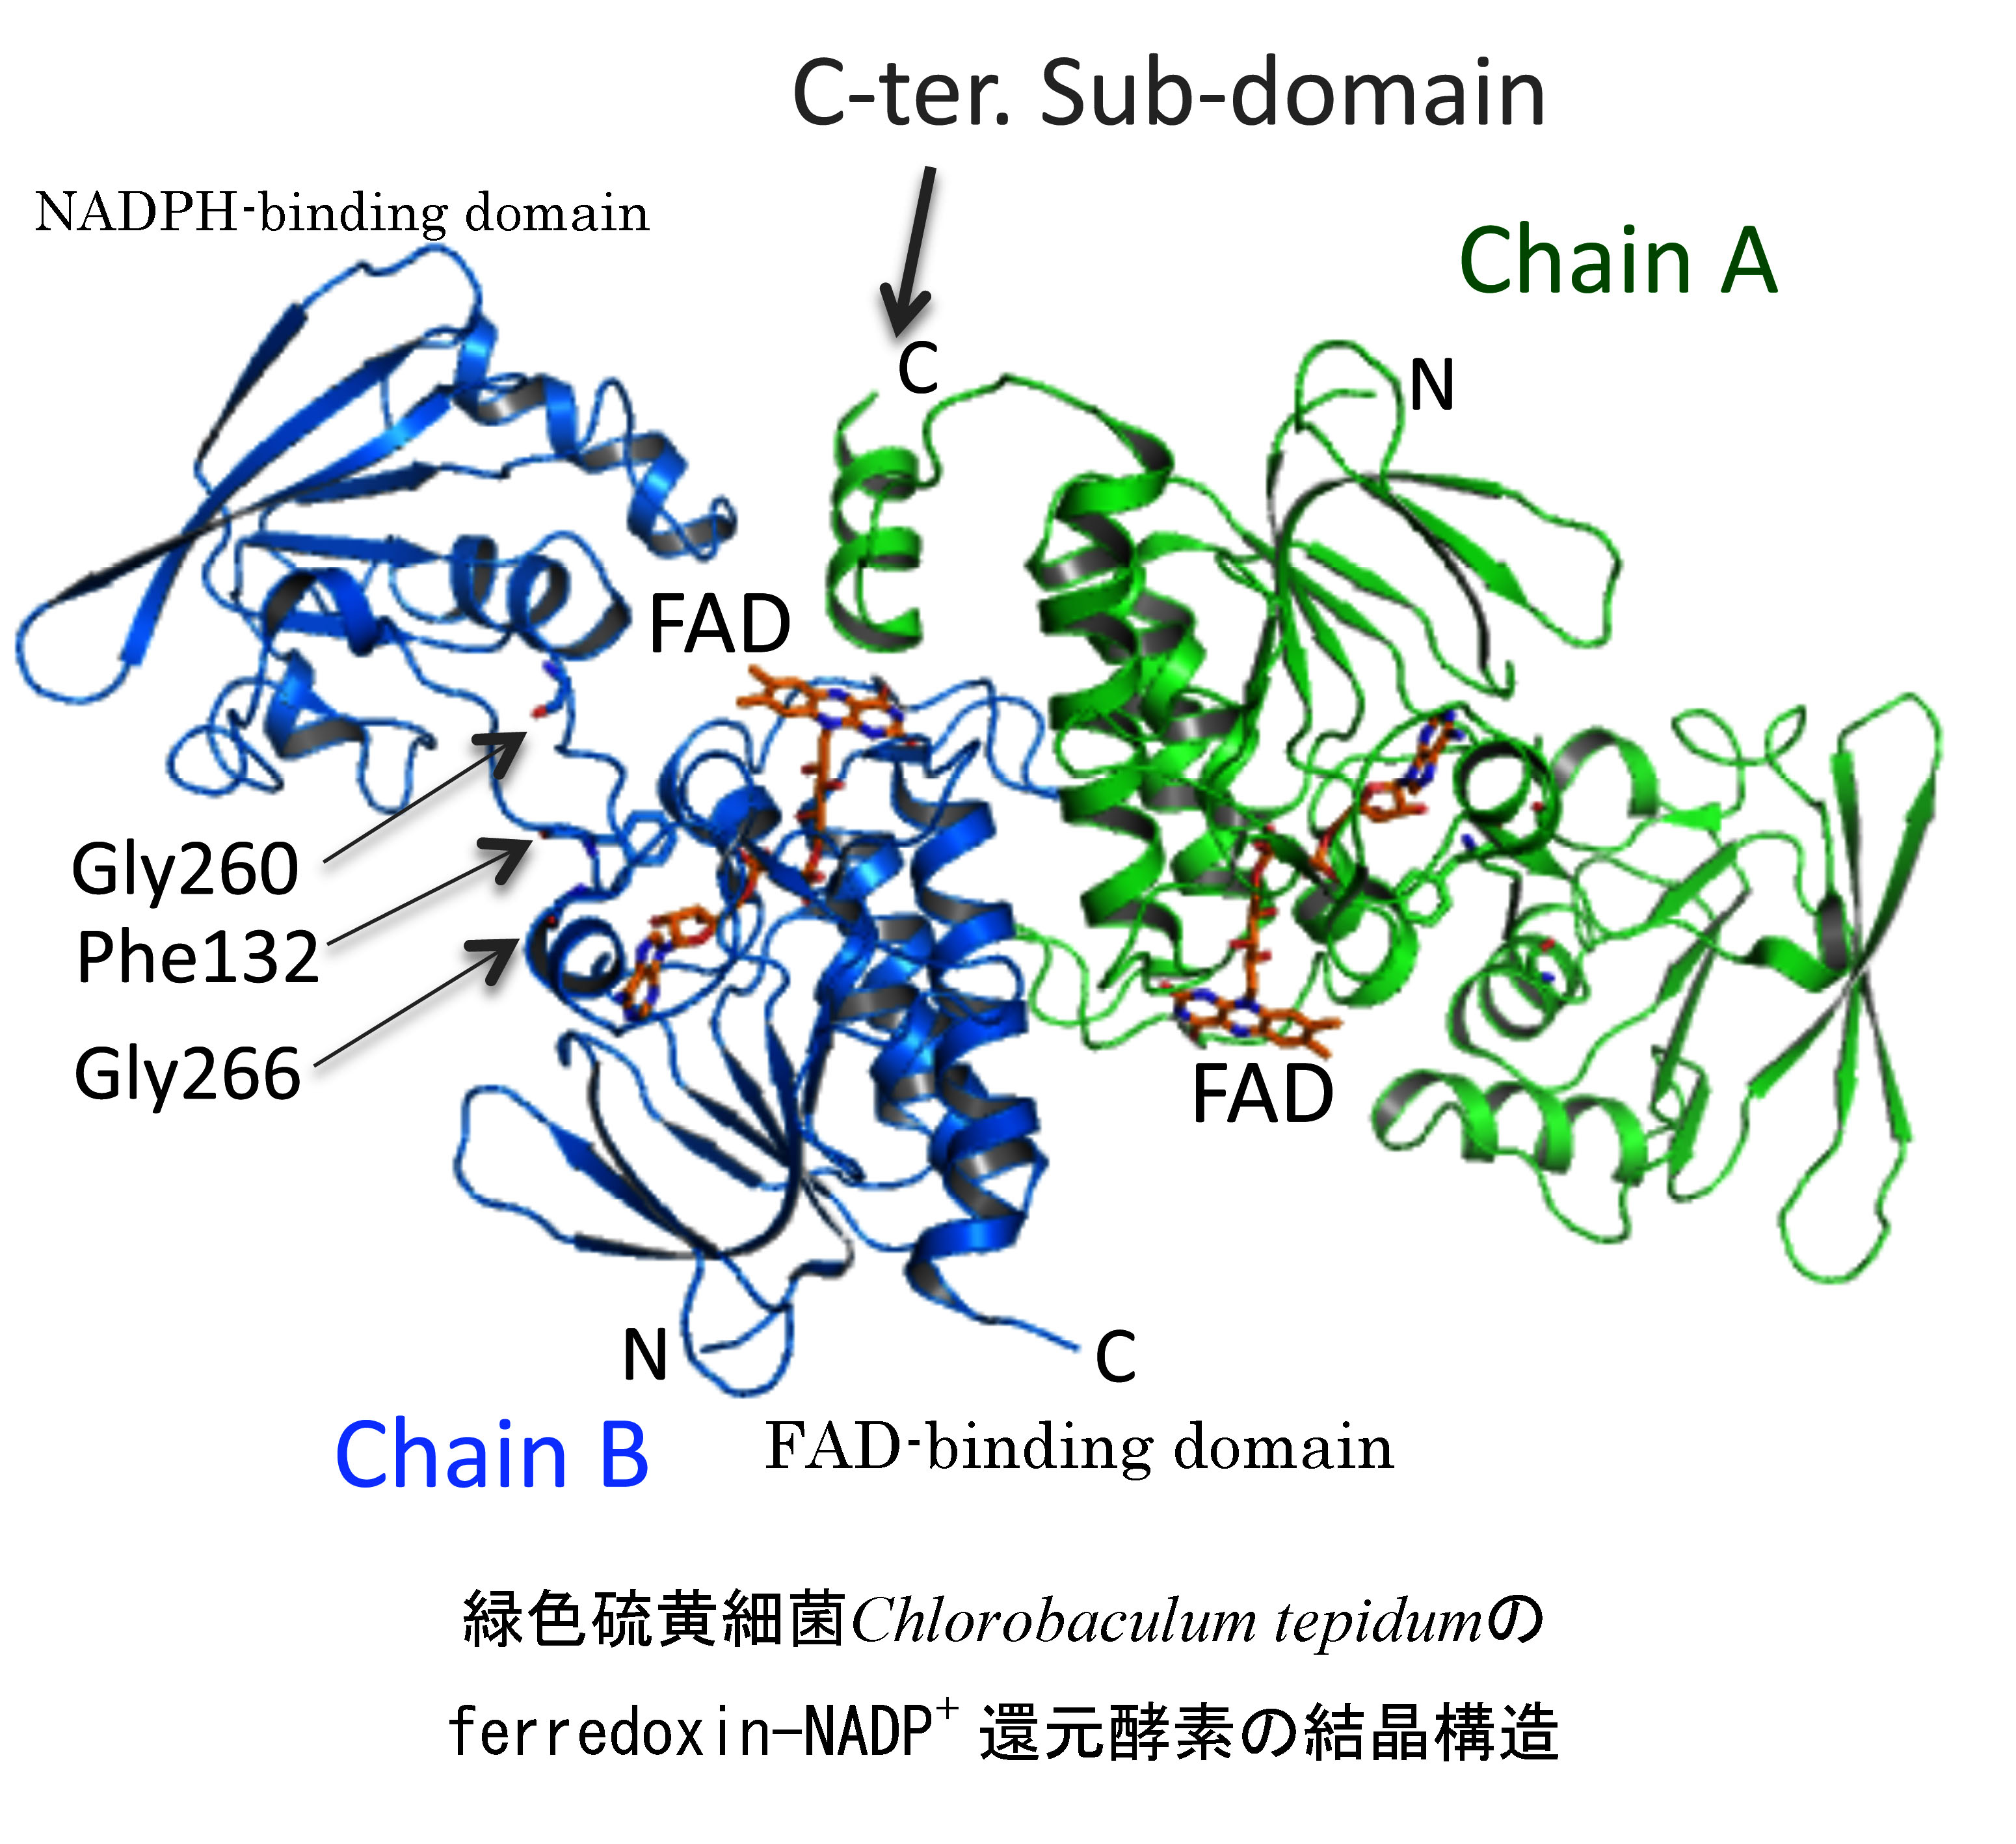 チオレドキシン還元酵素型Ferredoxin-NADPH酸化還元酵素の反応機構の解明